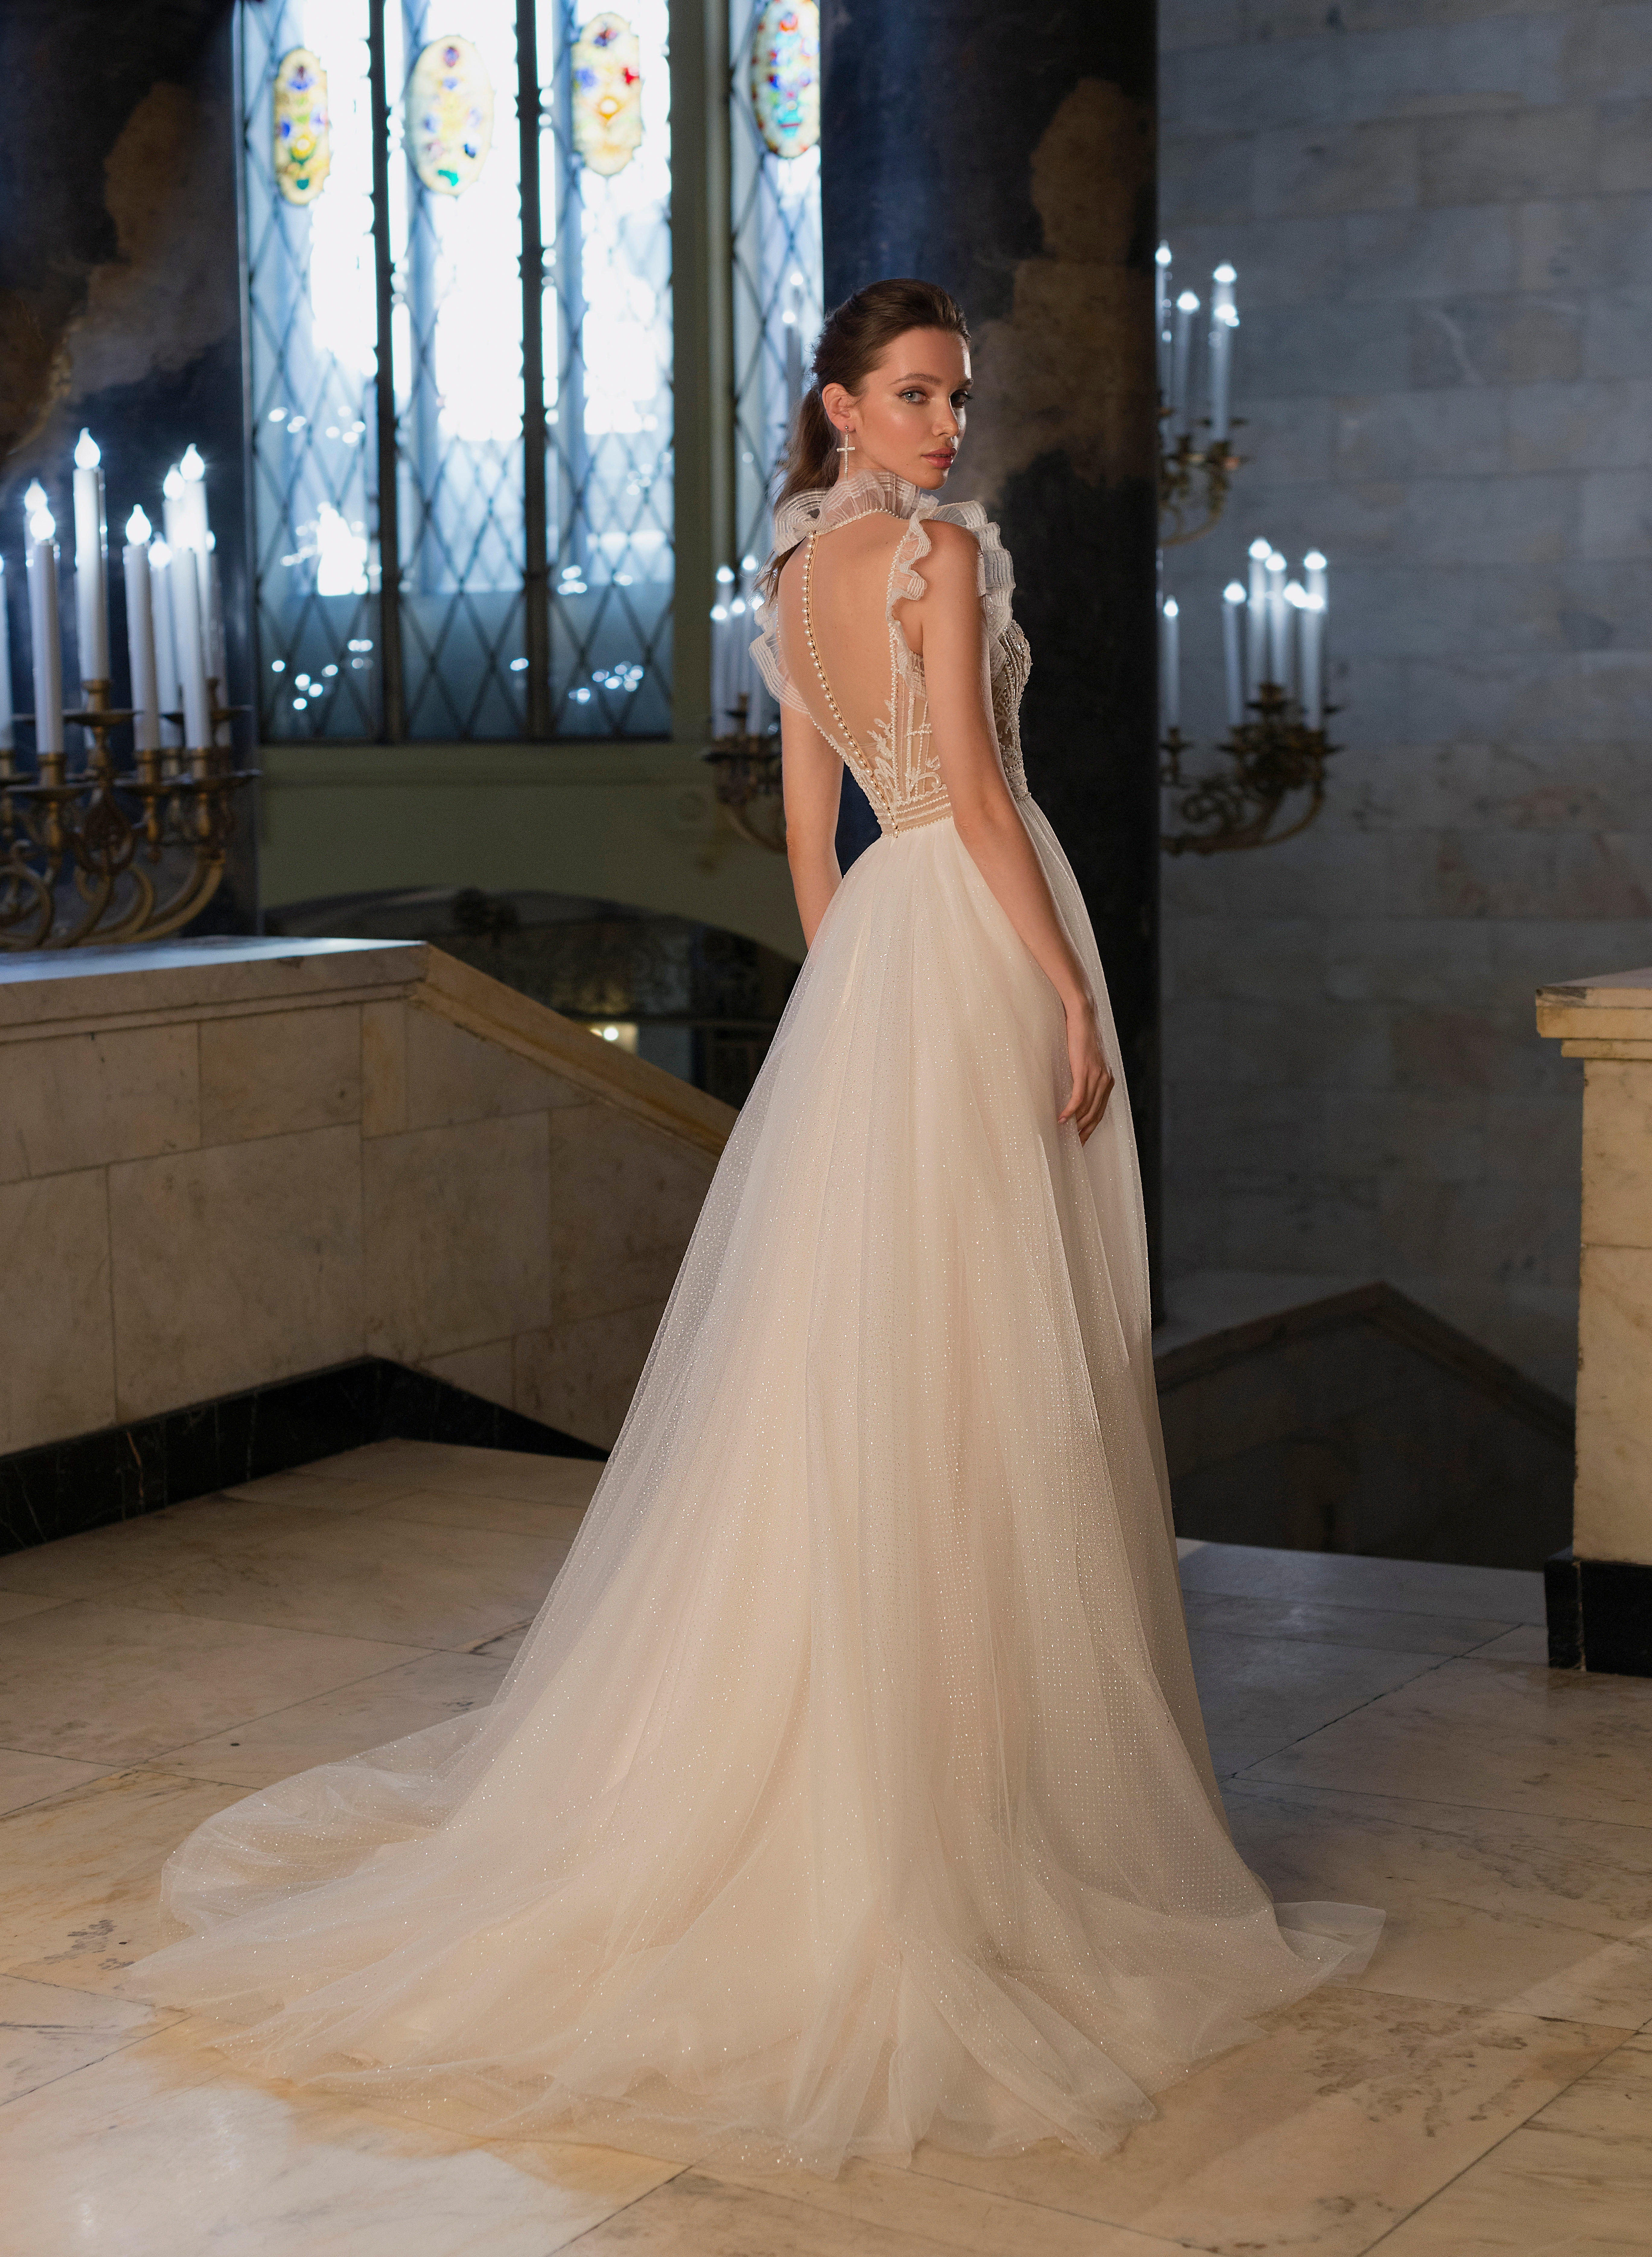 Купить свадебное платье «Татиана» Мэрри Марк из коллекции Бриллиант 2022 года в салоне «Мэри Трюфель»